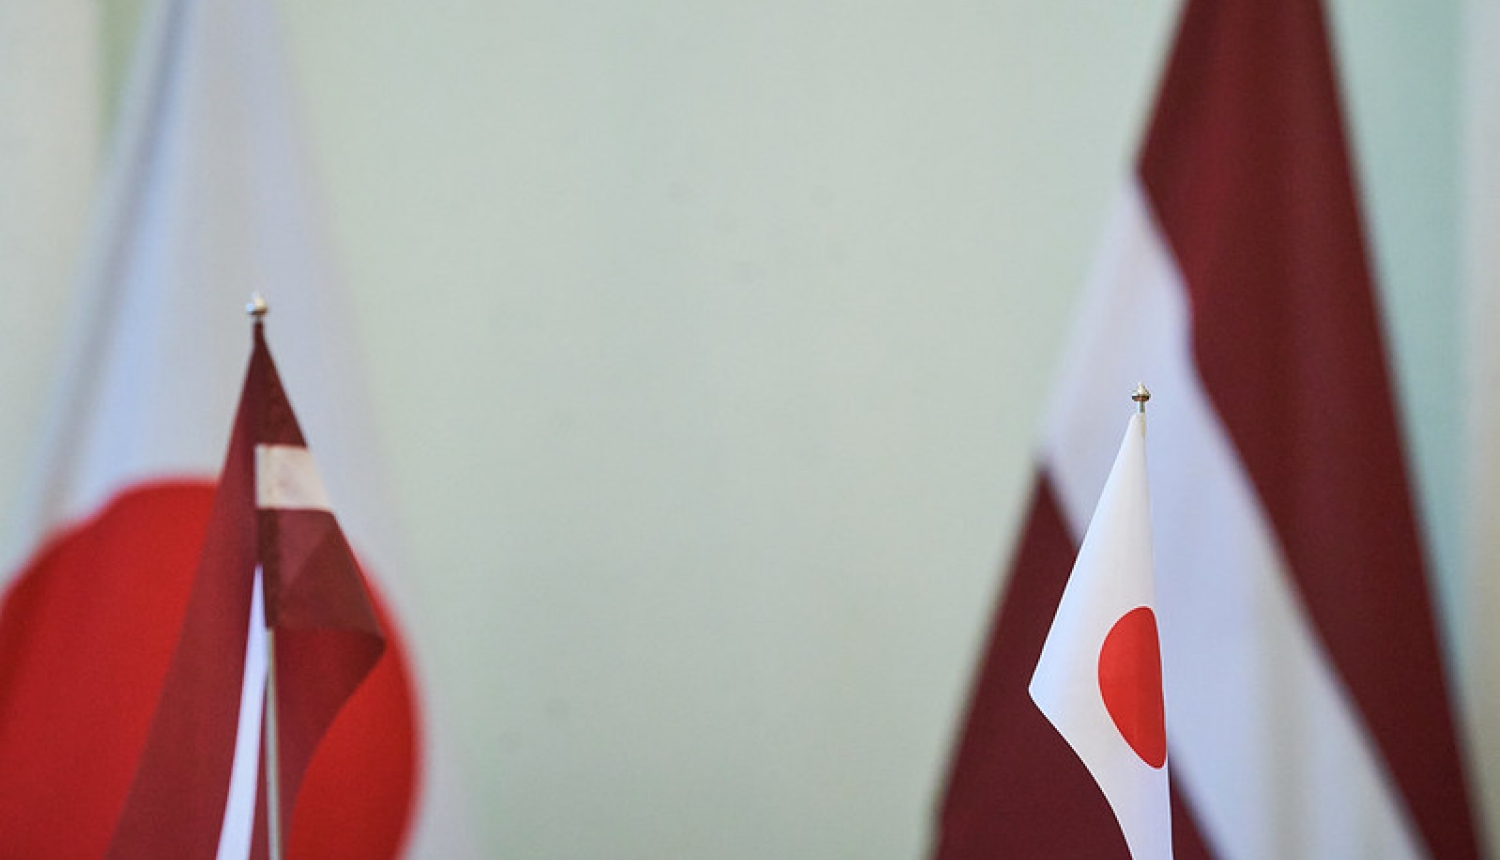 Japānas un Latvijas karogi